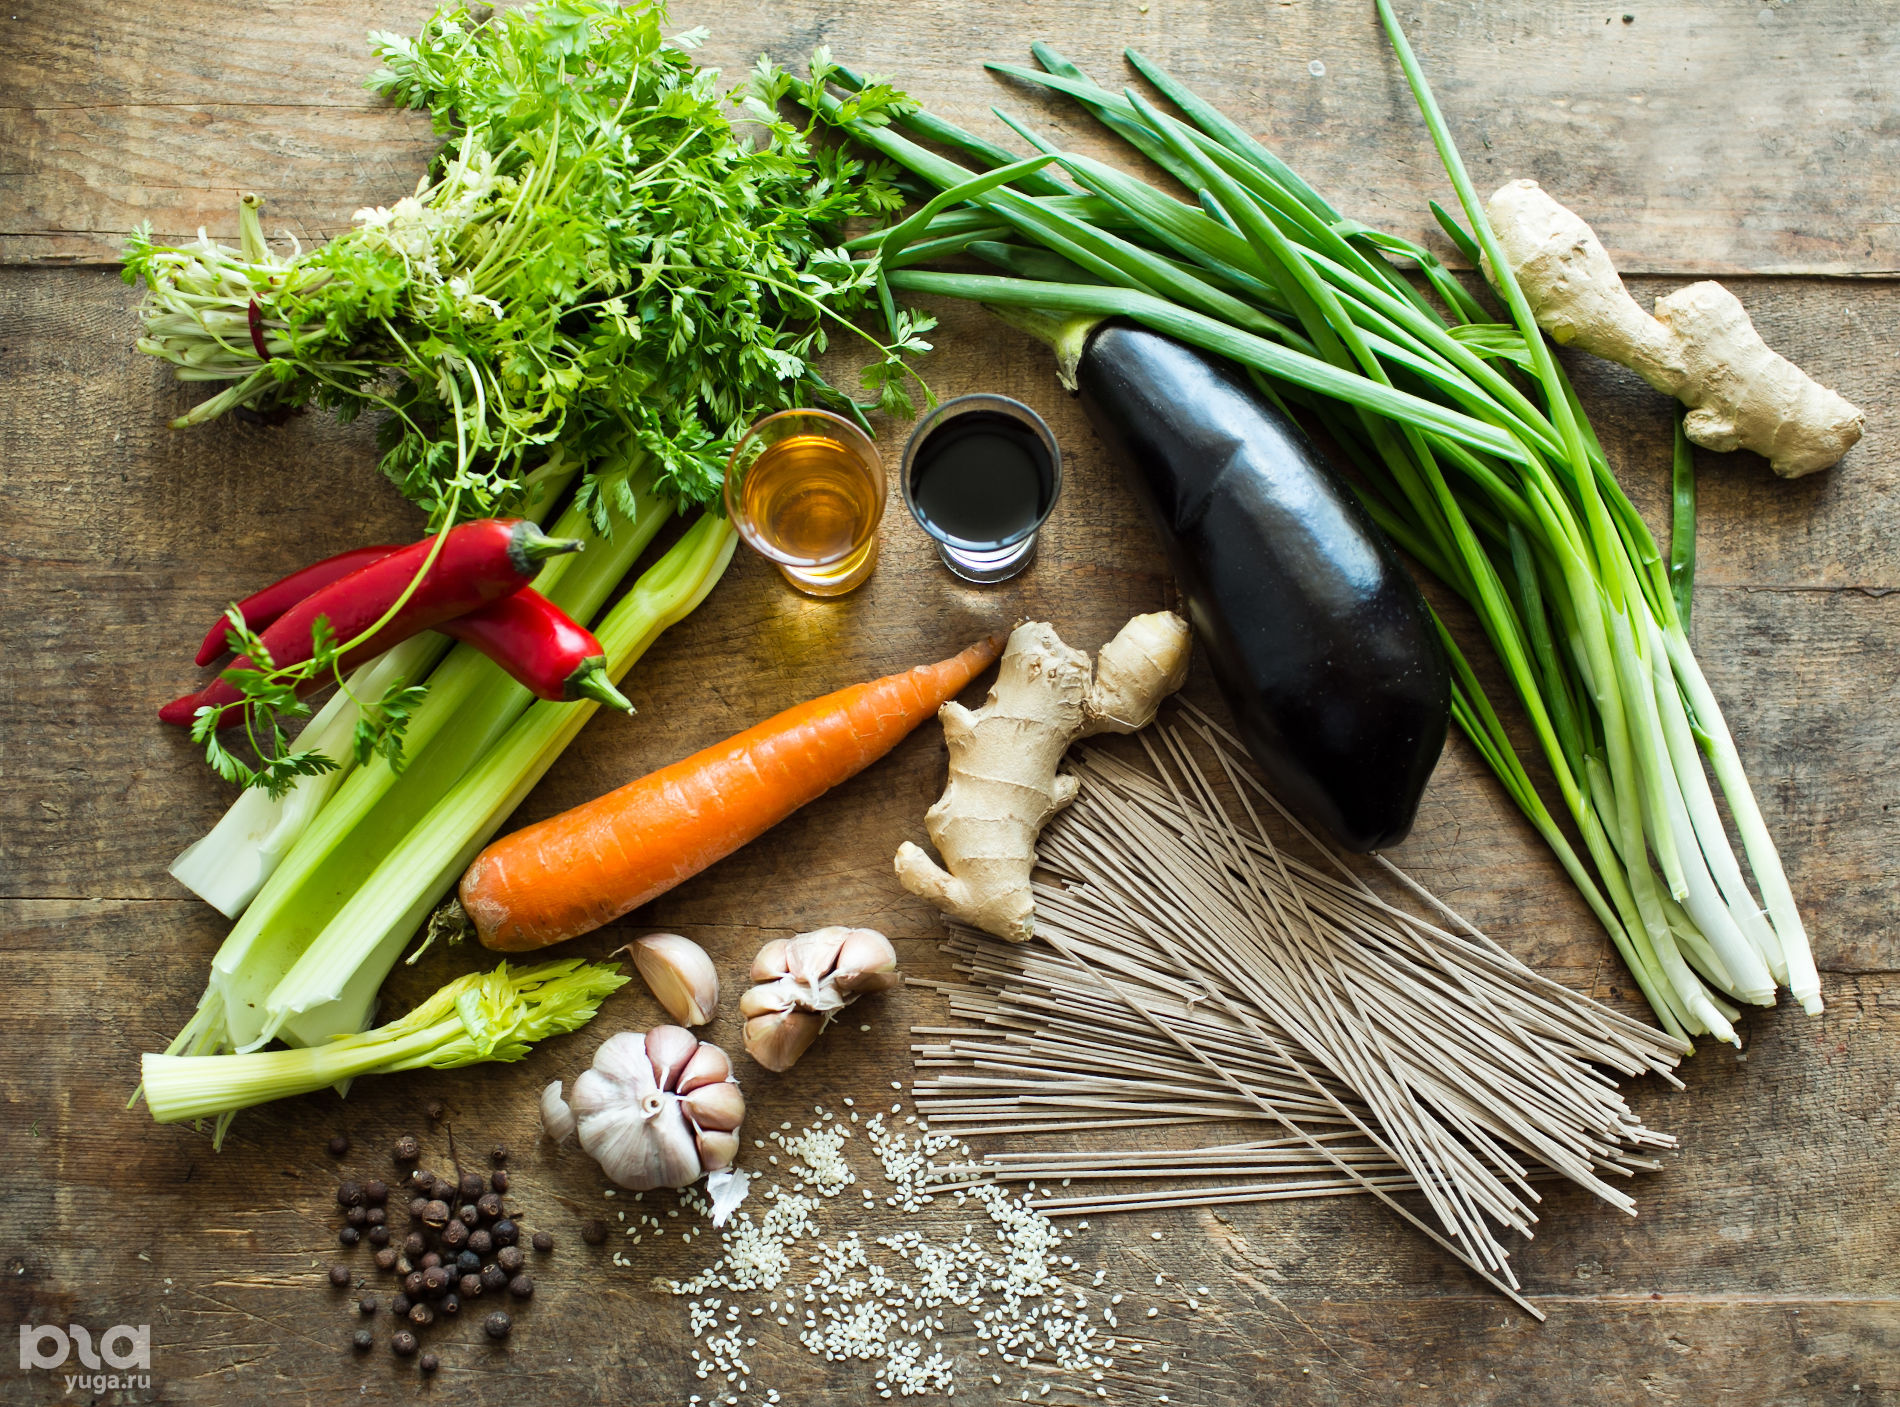 Ингредиенты для приготовления гречневой лапши с овощами © Фото Анны Голубцовой